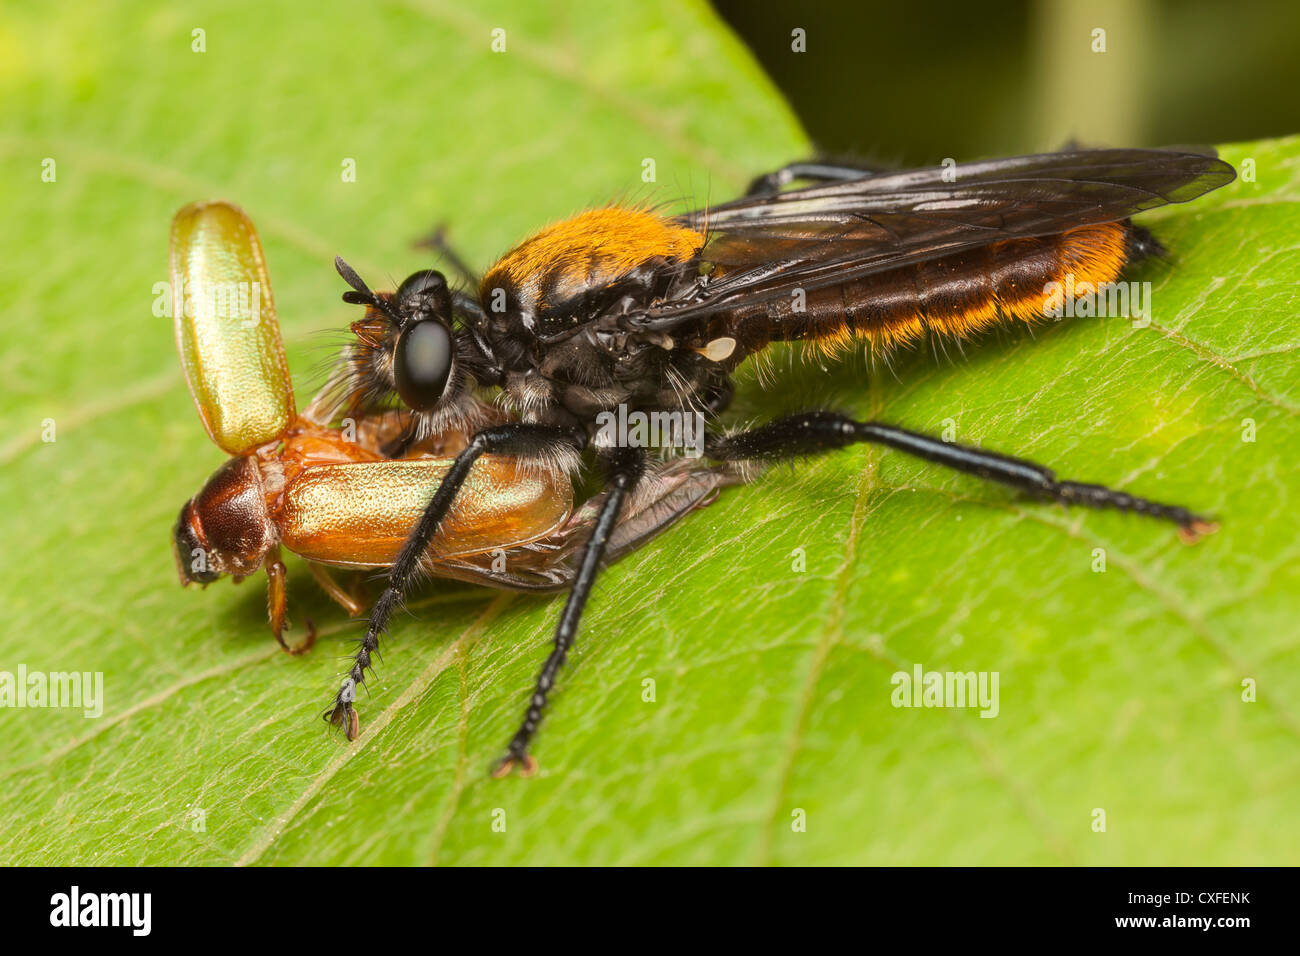 Un ladrón volar (Laphria sp.) del sericea/aktis complejo de especies con el recién capturado puede Escarabajo (Dichelonyx albicollis) presa. Foto de stock